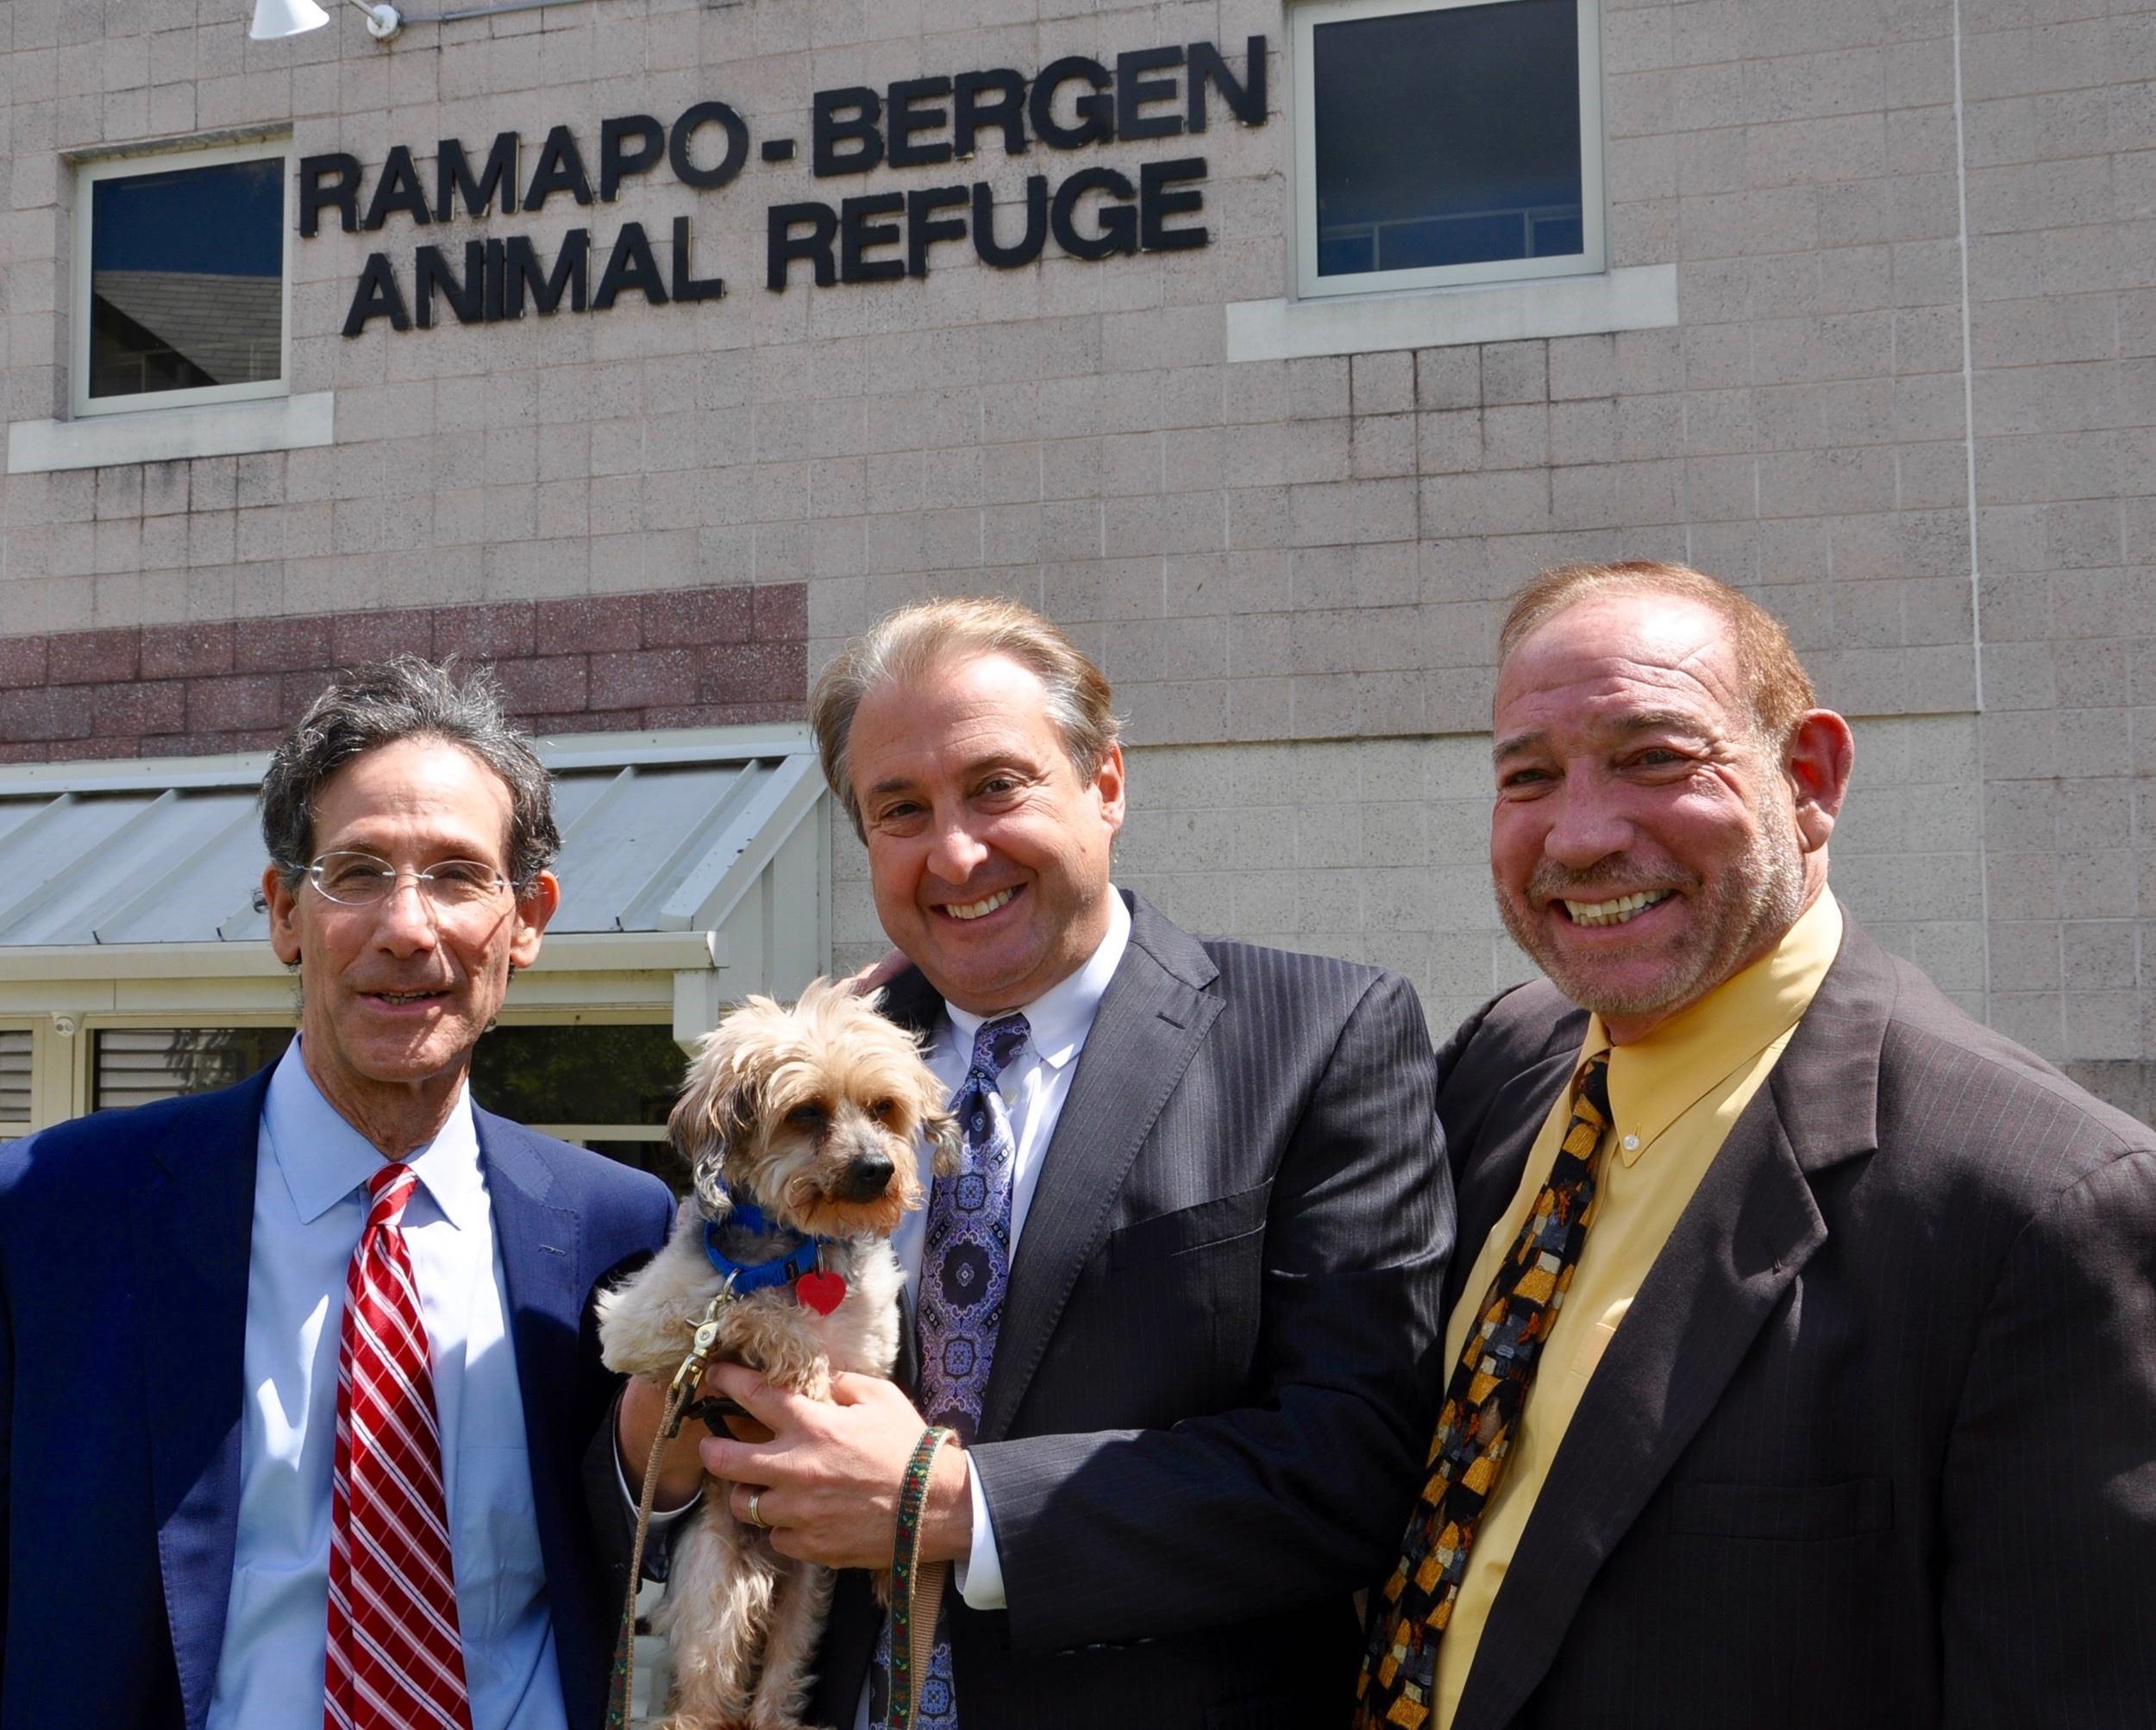 Kantrowitz, Goldhamer & Graifman Salute Ramapo-Bergen Animal Refuge For Their Heroic Work